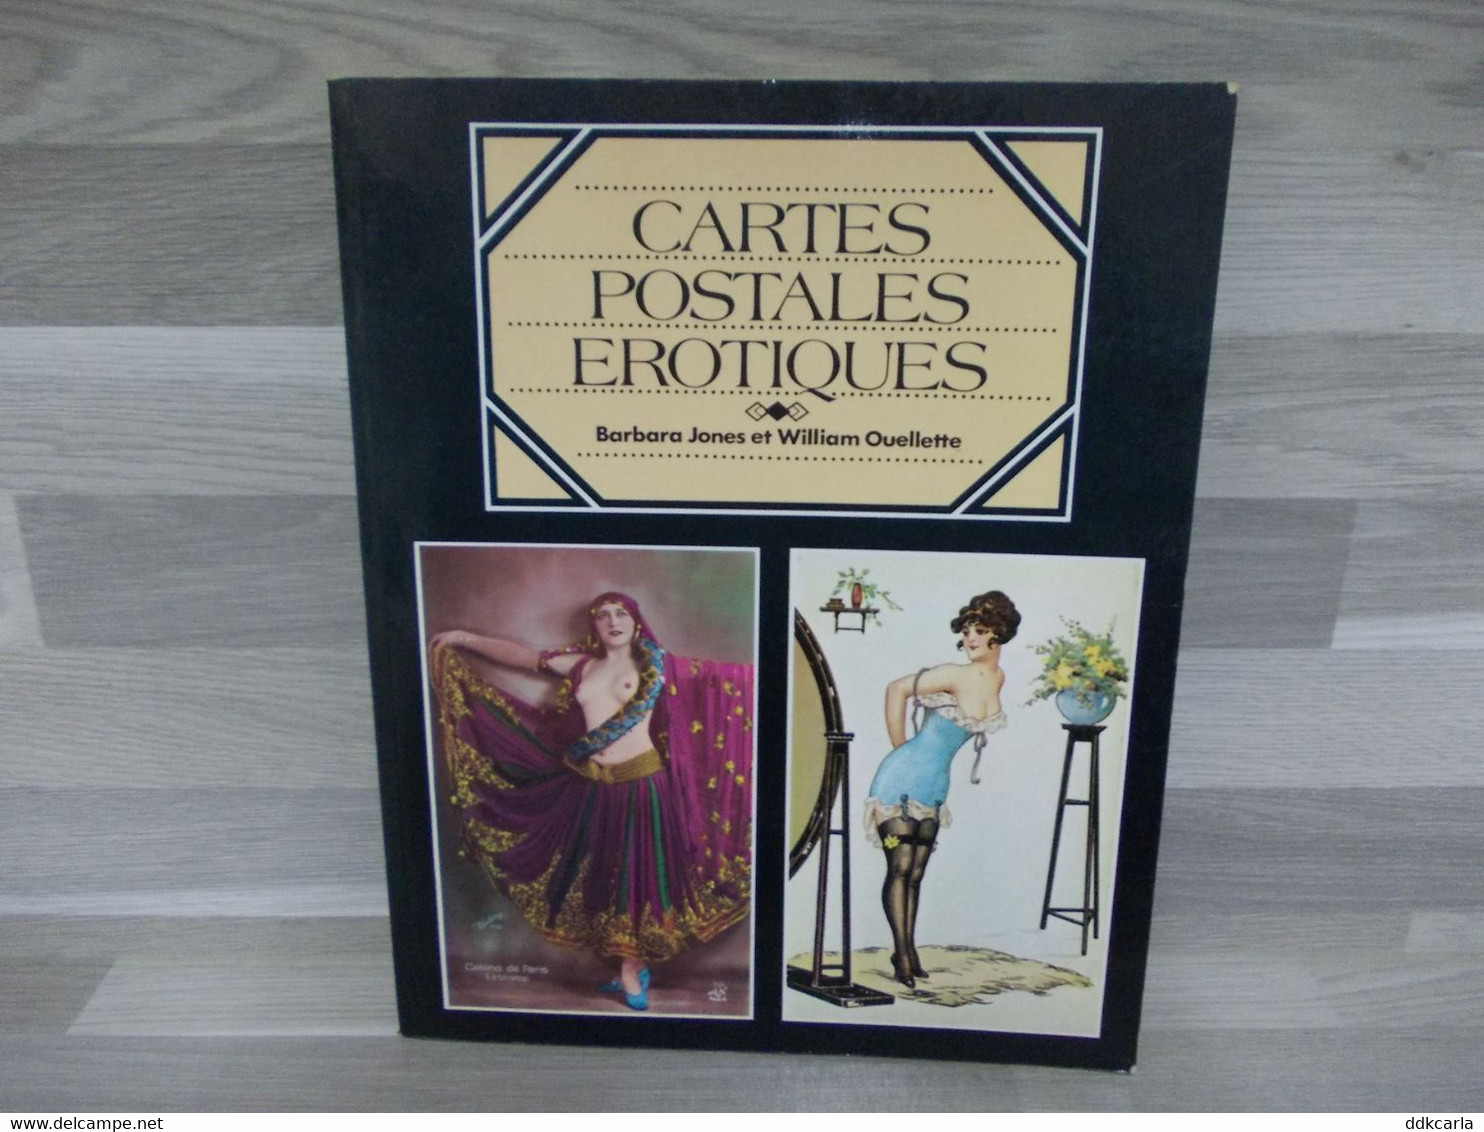 Cartes Postales Erotiques - Barbara Jones Et William Ouellette - Bücher & Kataloge